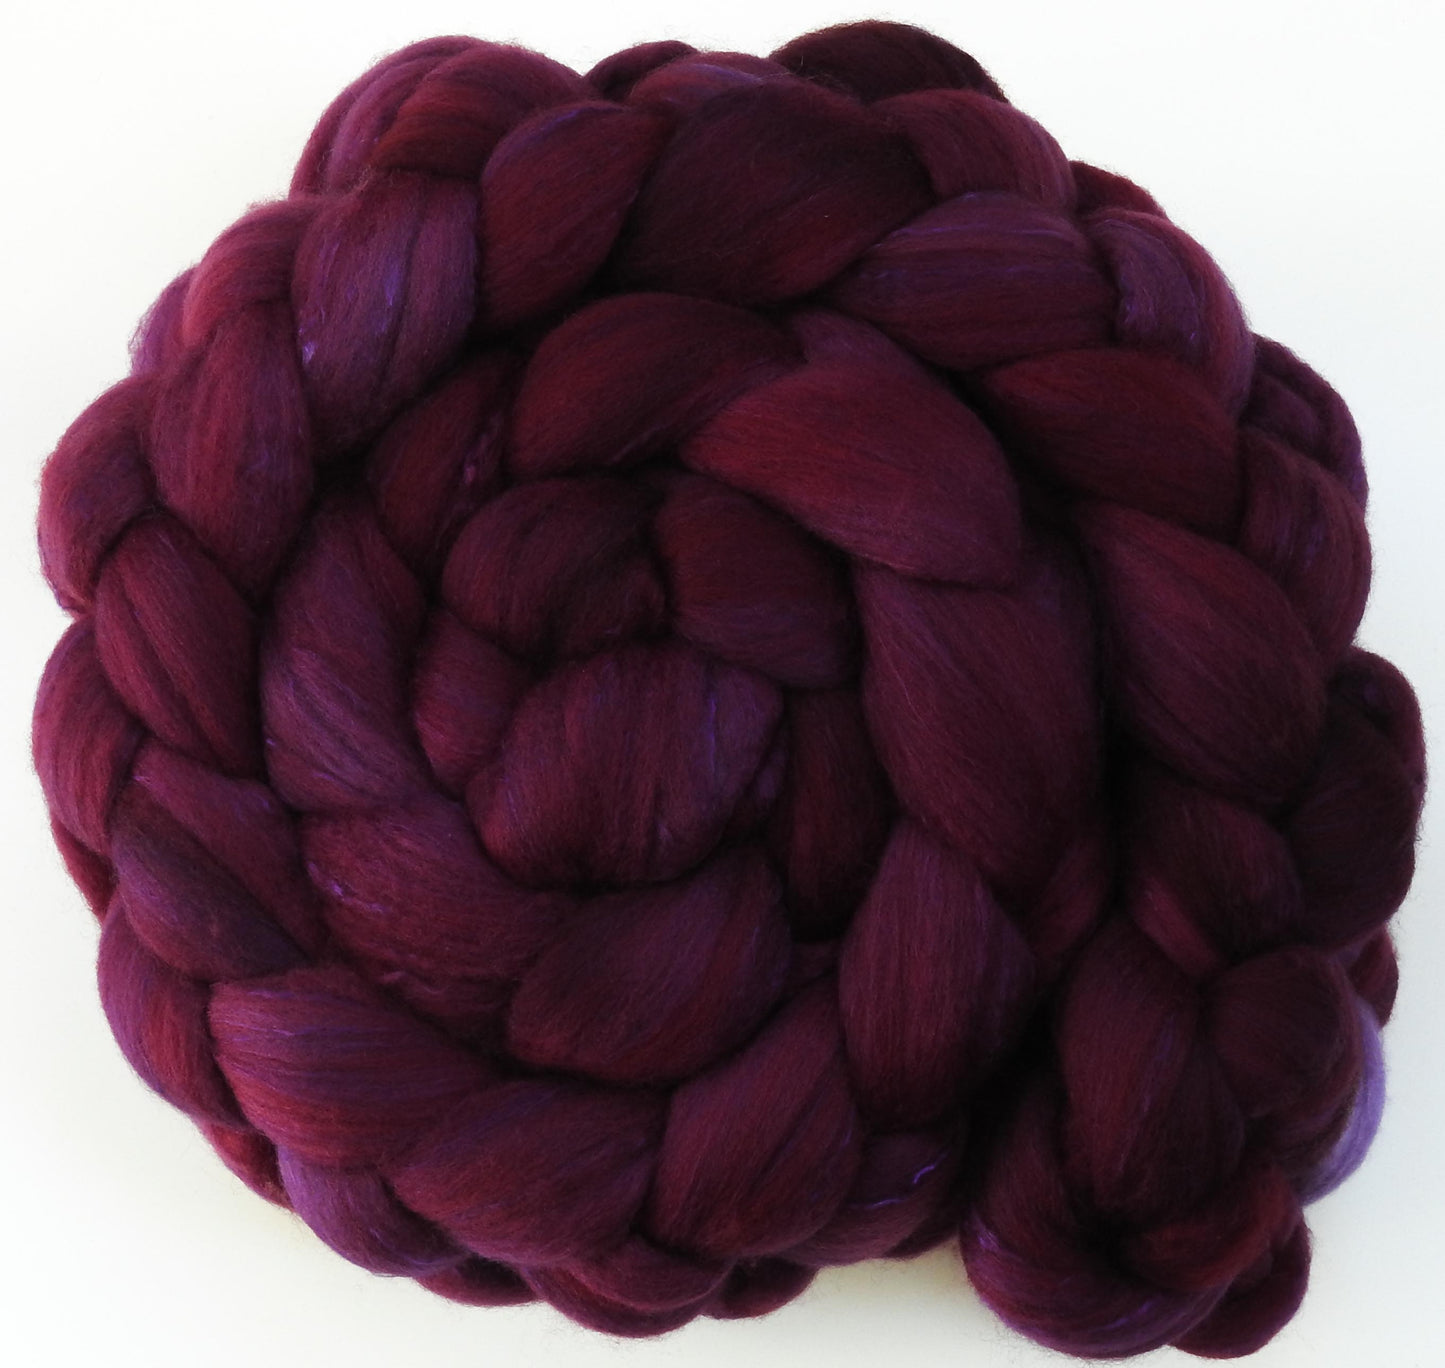 Boysenberry (5.9 oz) - Organic Polwarth / Tussah silk (80/20)